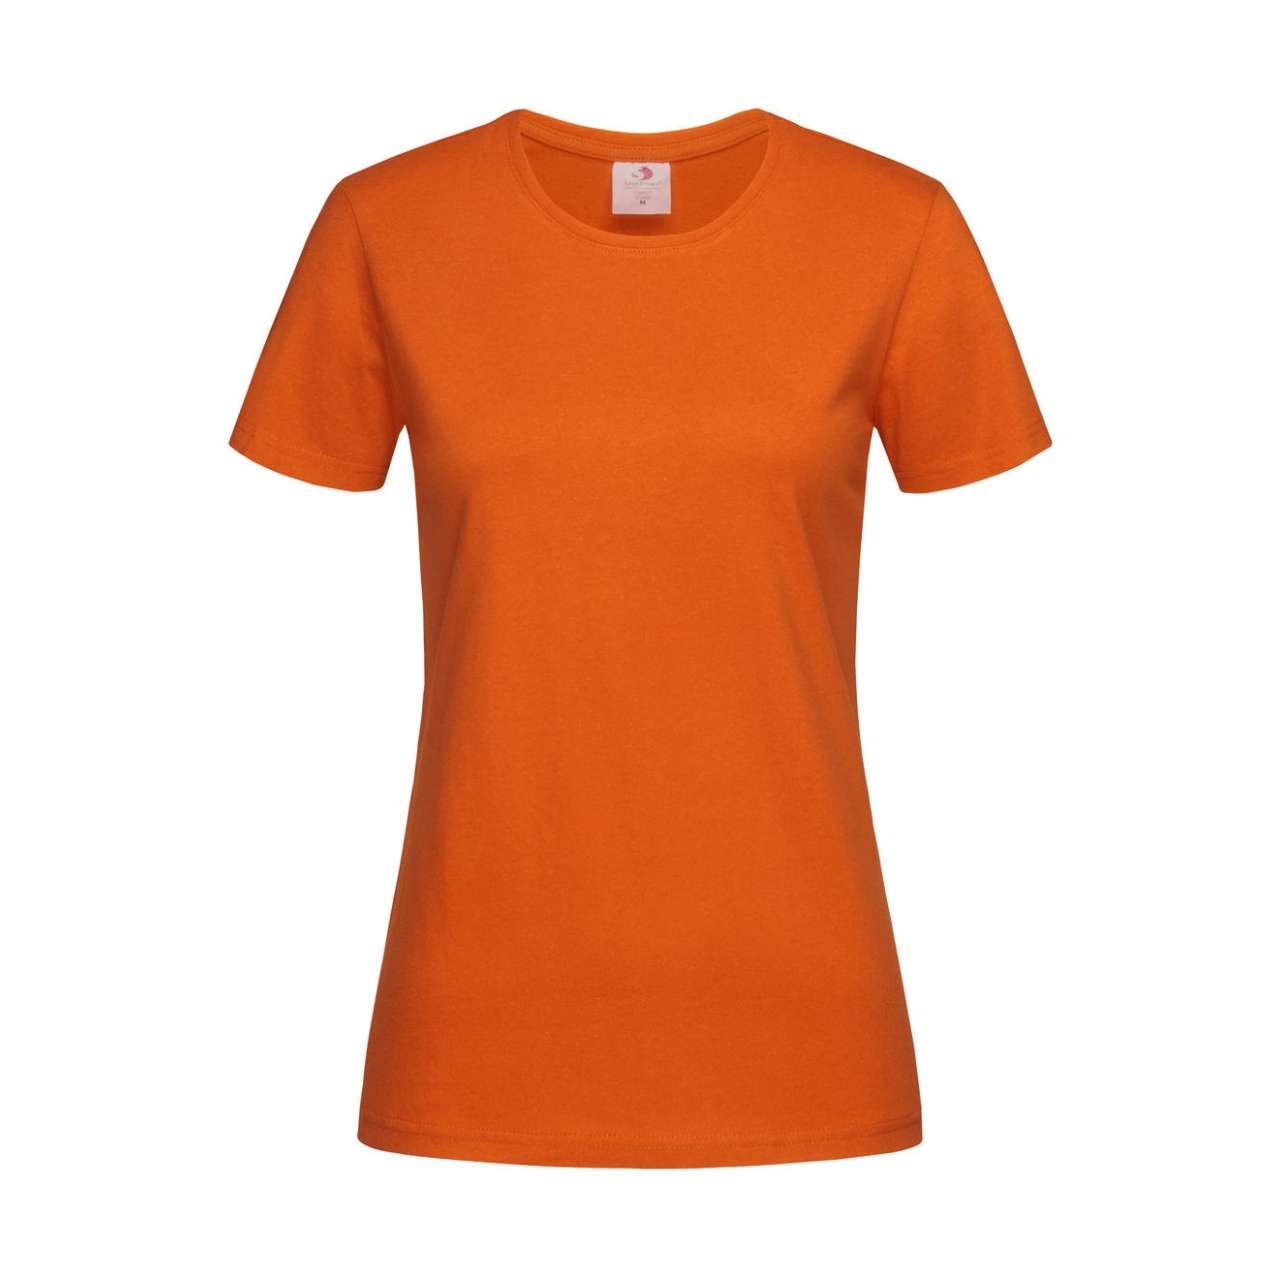 Tričko dámské Stedman Fitted s kulatým výstřihem - oranžové, XS